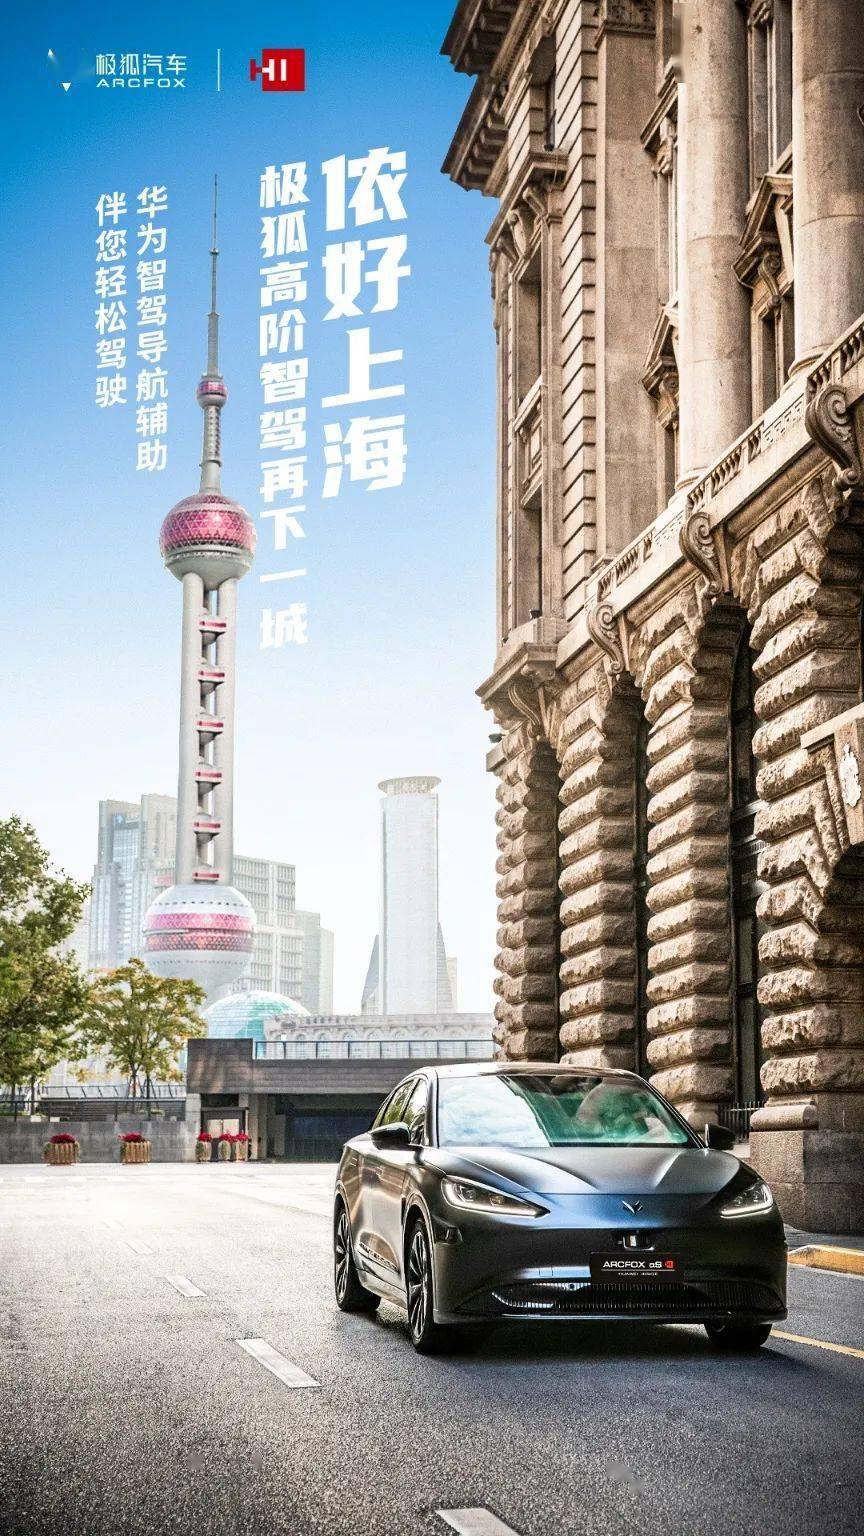 华为手机y 220t
:再下一城 极狐阿尔法S 全新HI版在上海率先推送城区NCA